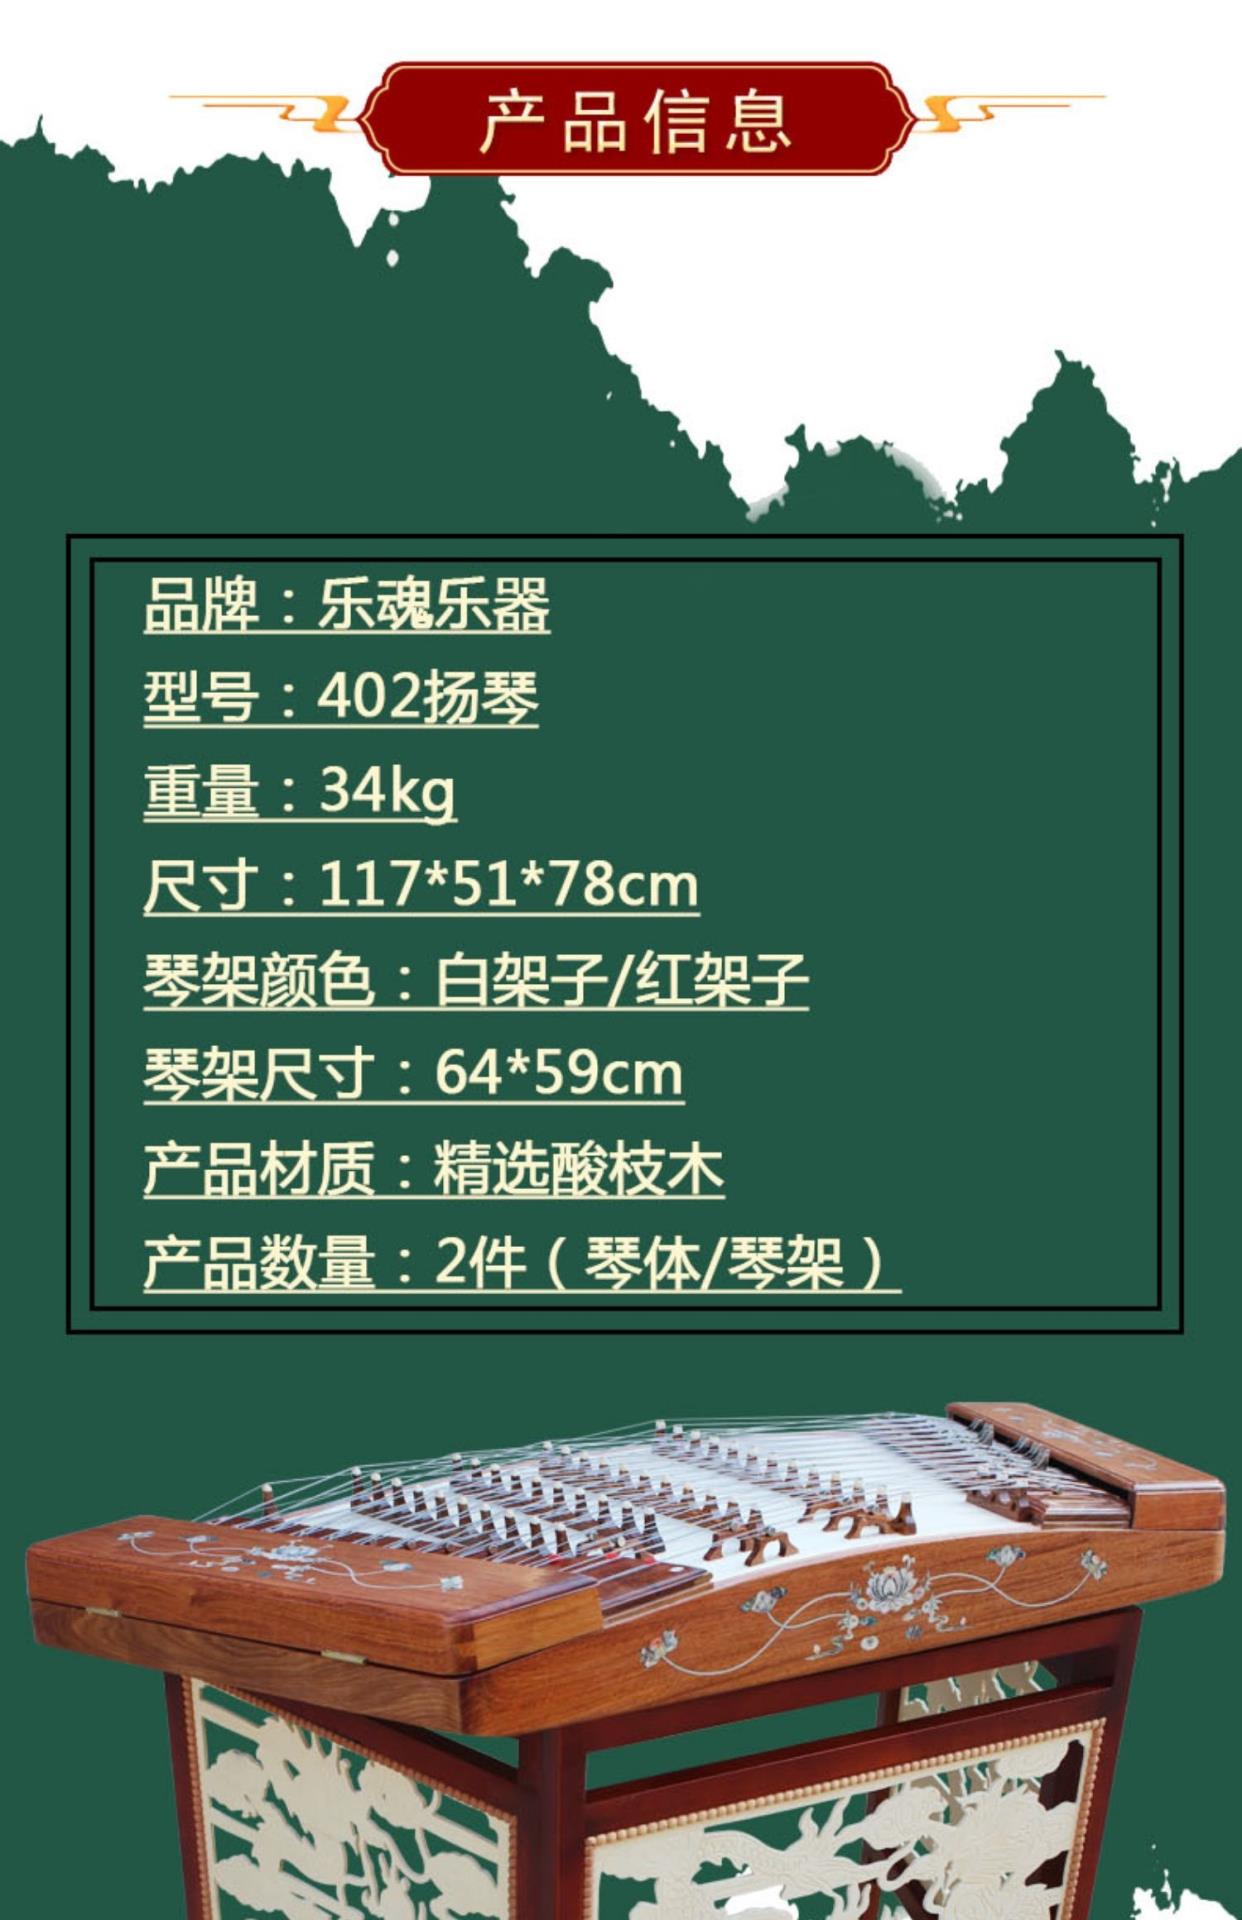 Cửa hàng cao cấp bảy năm tuổi Châu Phi Dalbergia Yangqin Red Rosewood Yangqin 402 Yangqin Musical Instruments - Nhạc cụ dân tộc